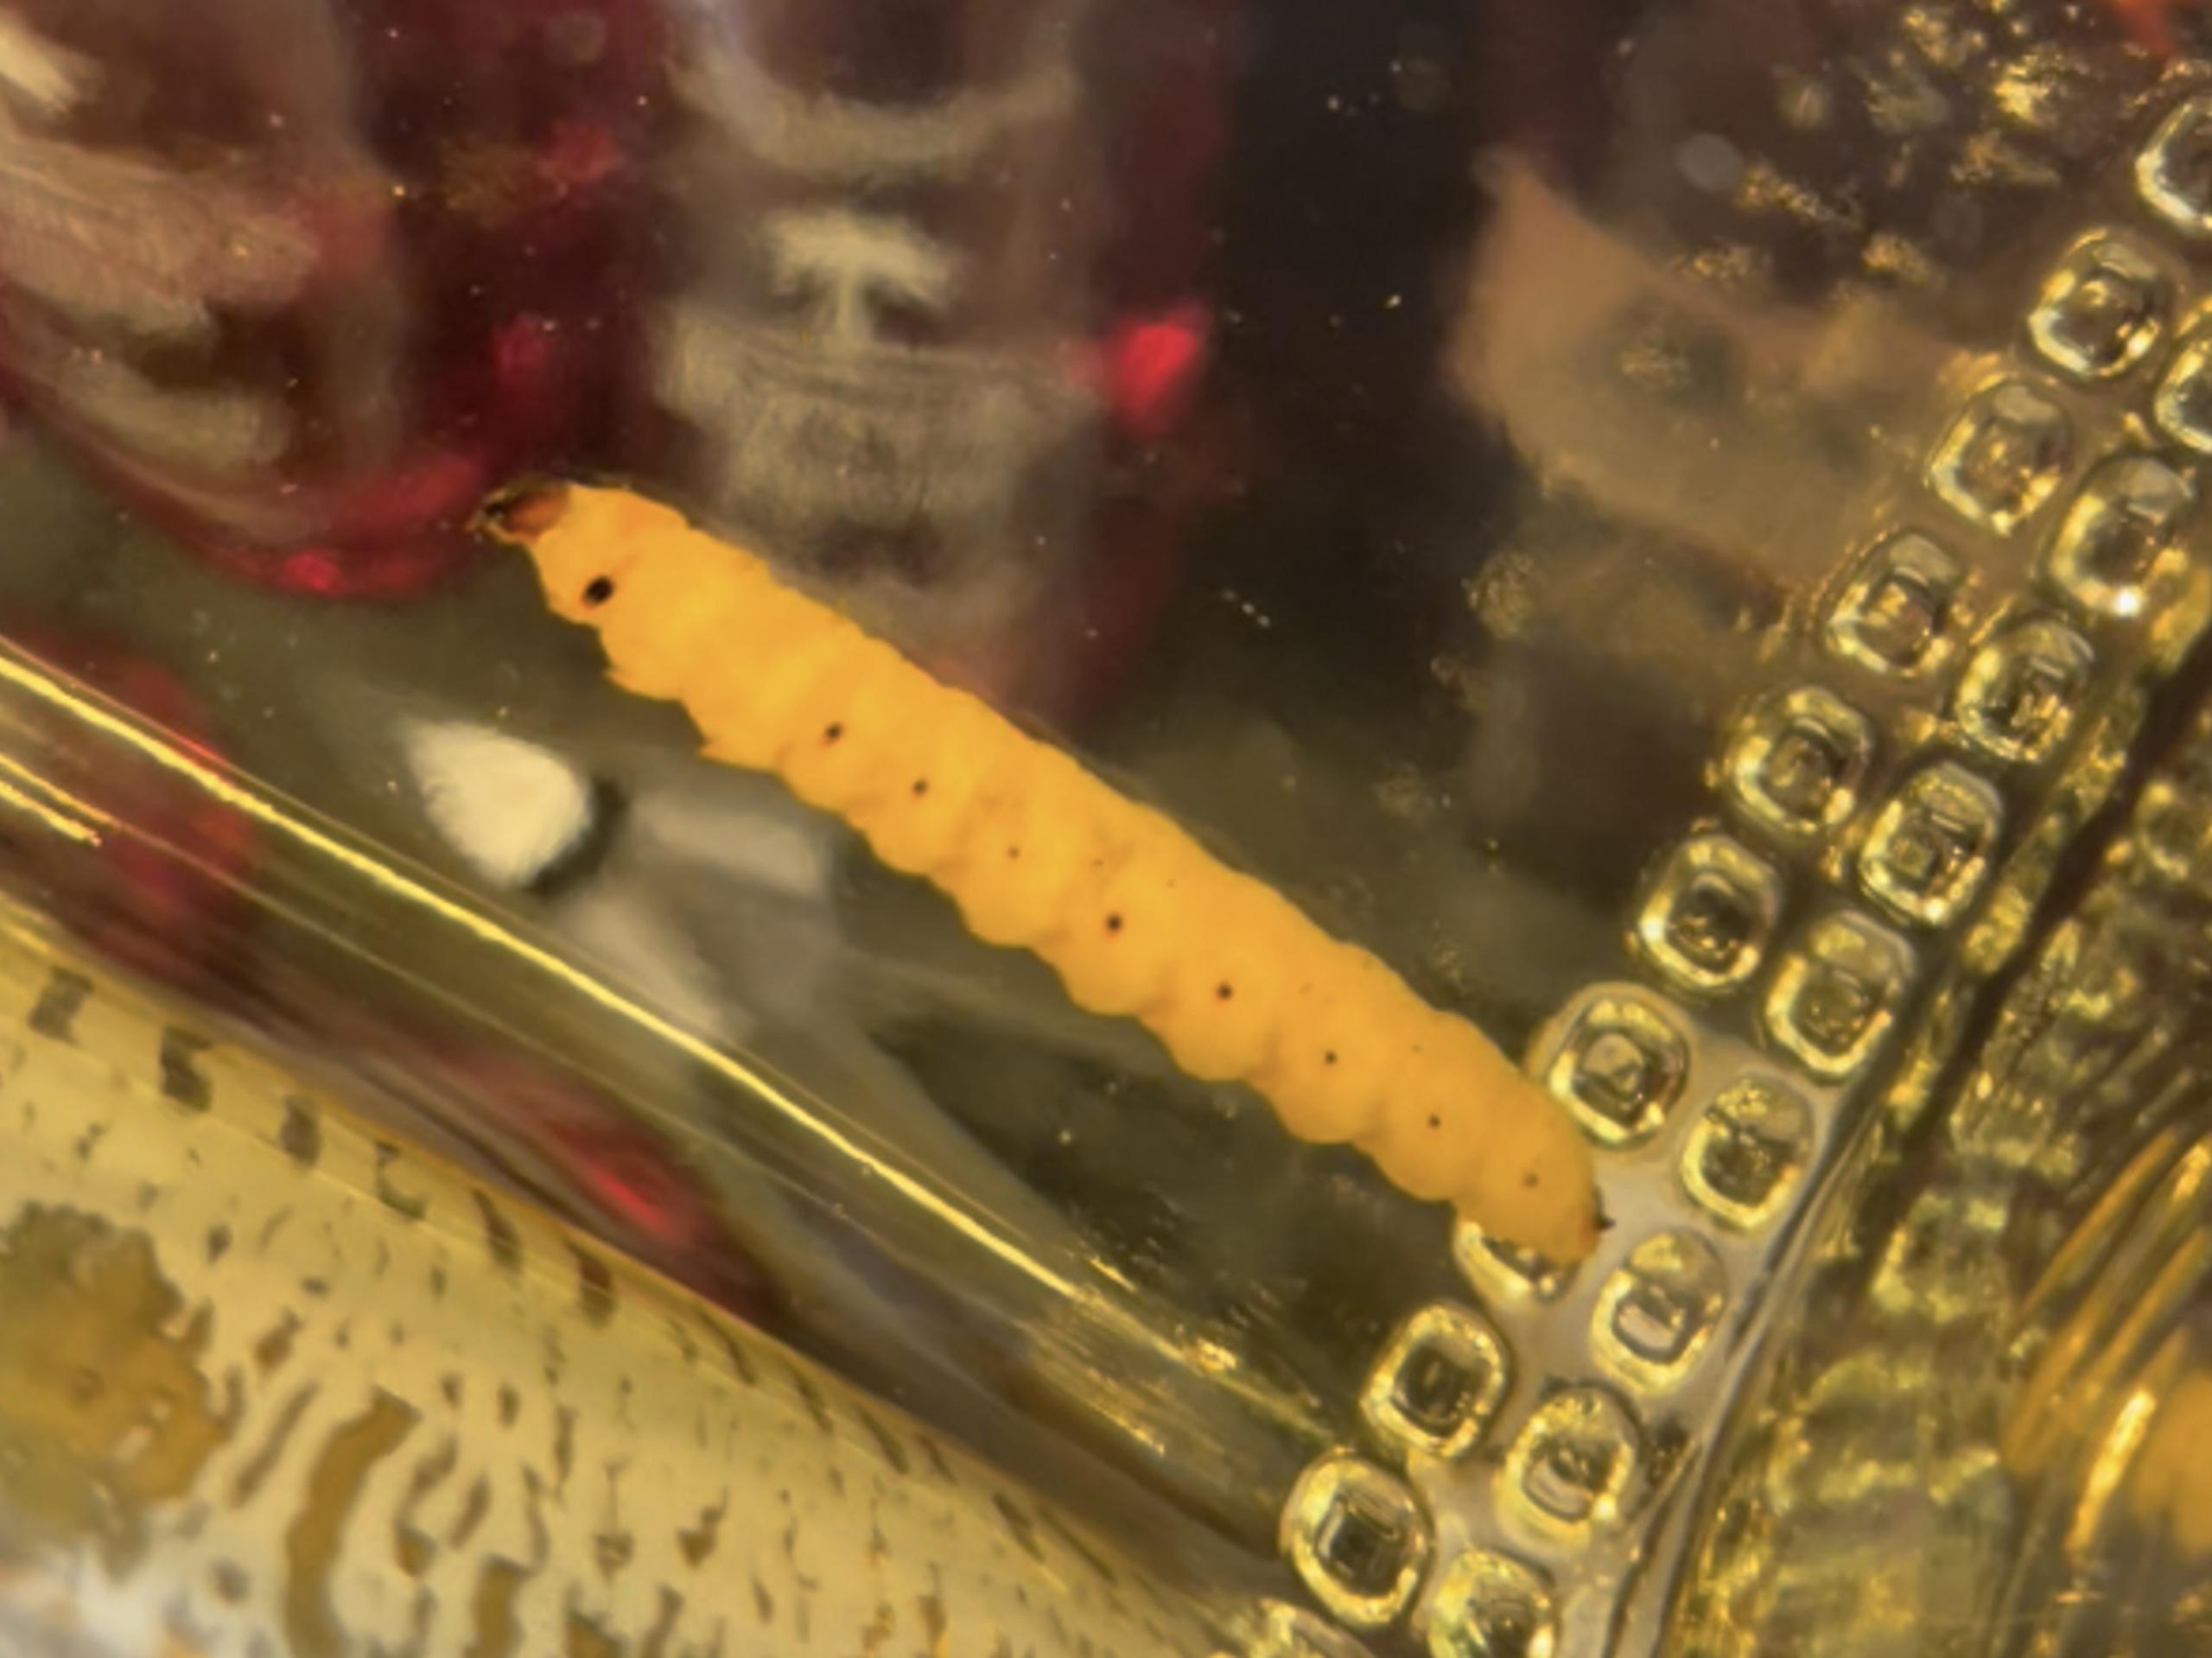 Fotografía cedida por Akito Y. Kawahara de un primer plano que muestra a un gusano dentro de una botella de mezcal "Lajita Reposado".